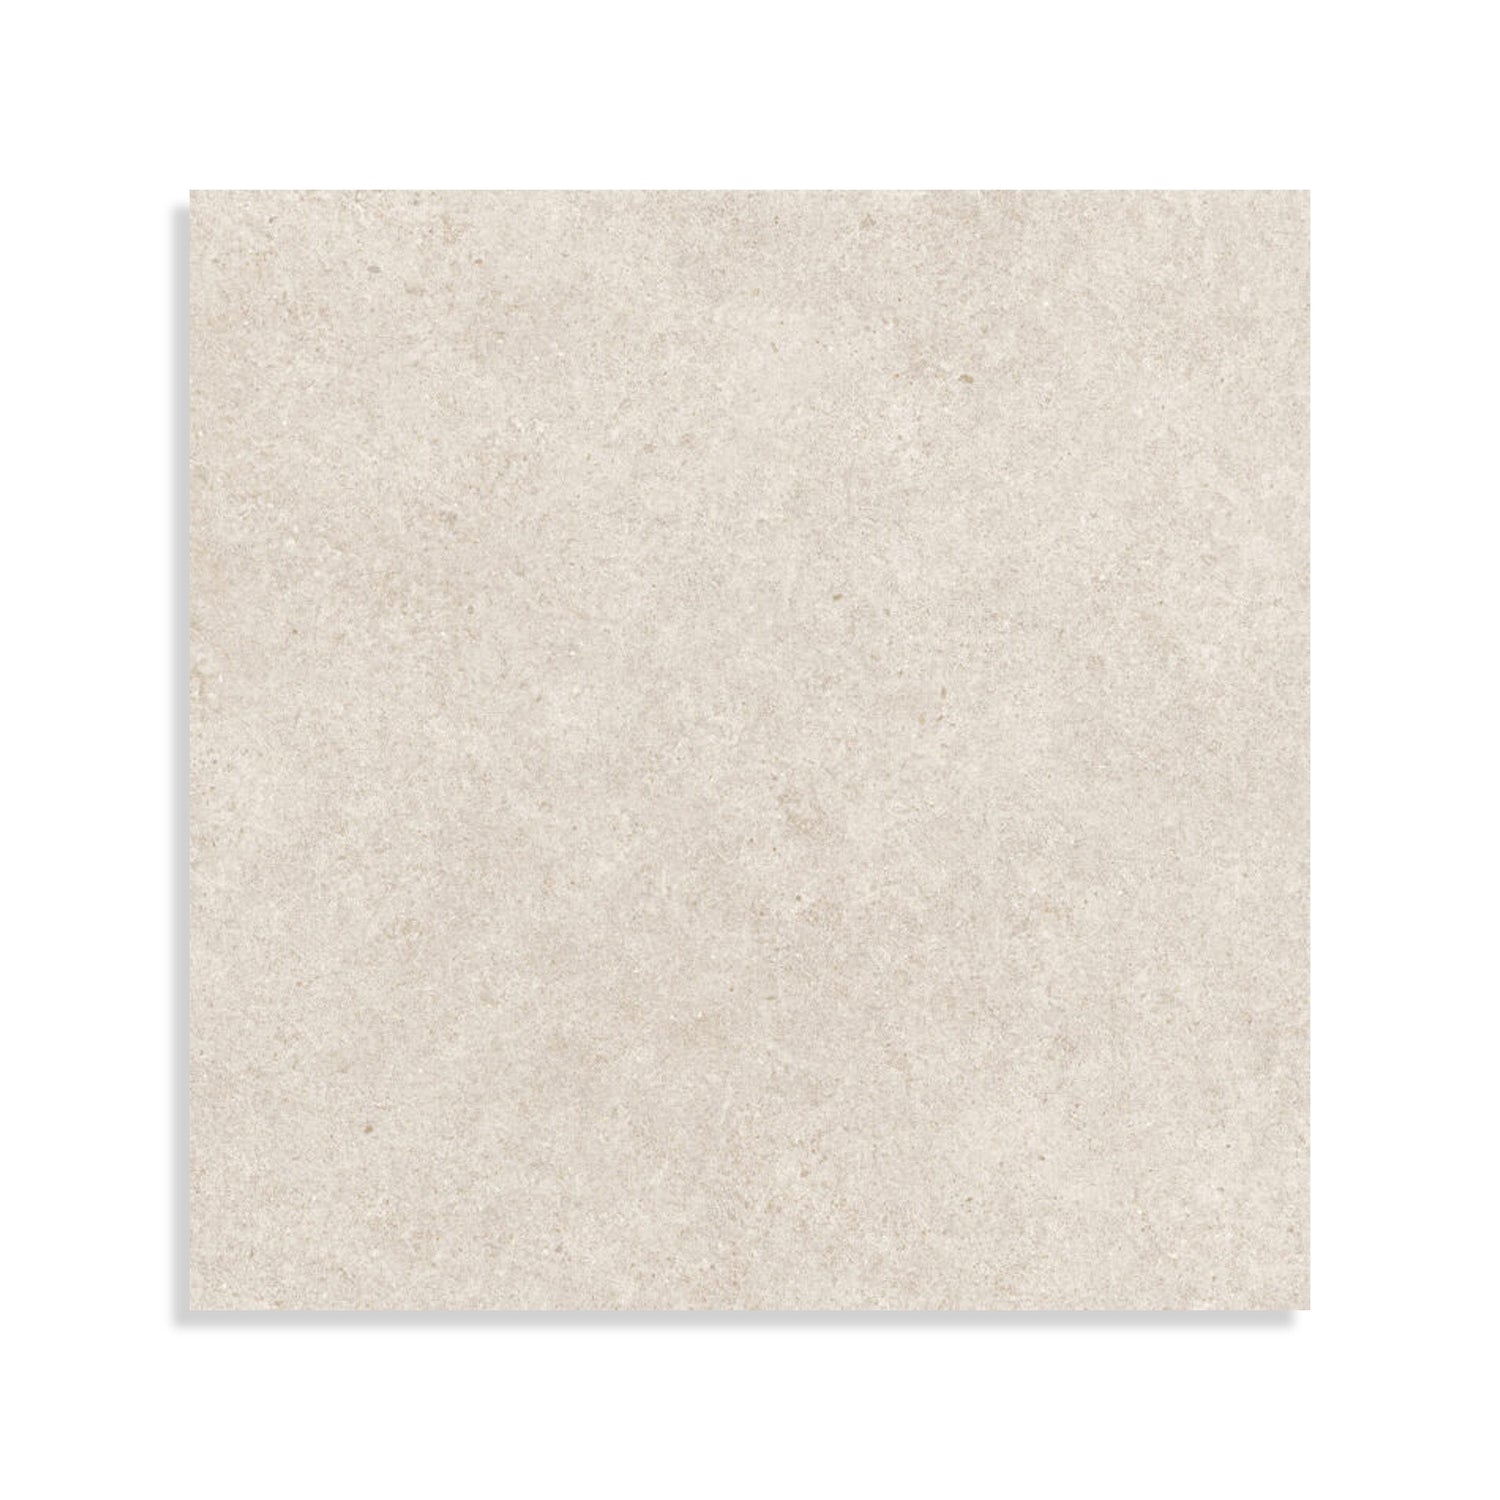 Minoli - Boost Stone White Matt, 60 x 60cm (BST1290) - Tiles &amp; Stone To You